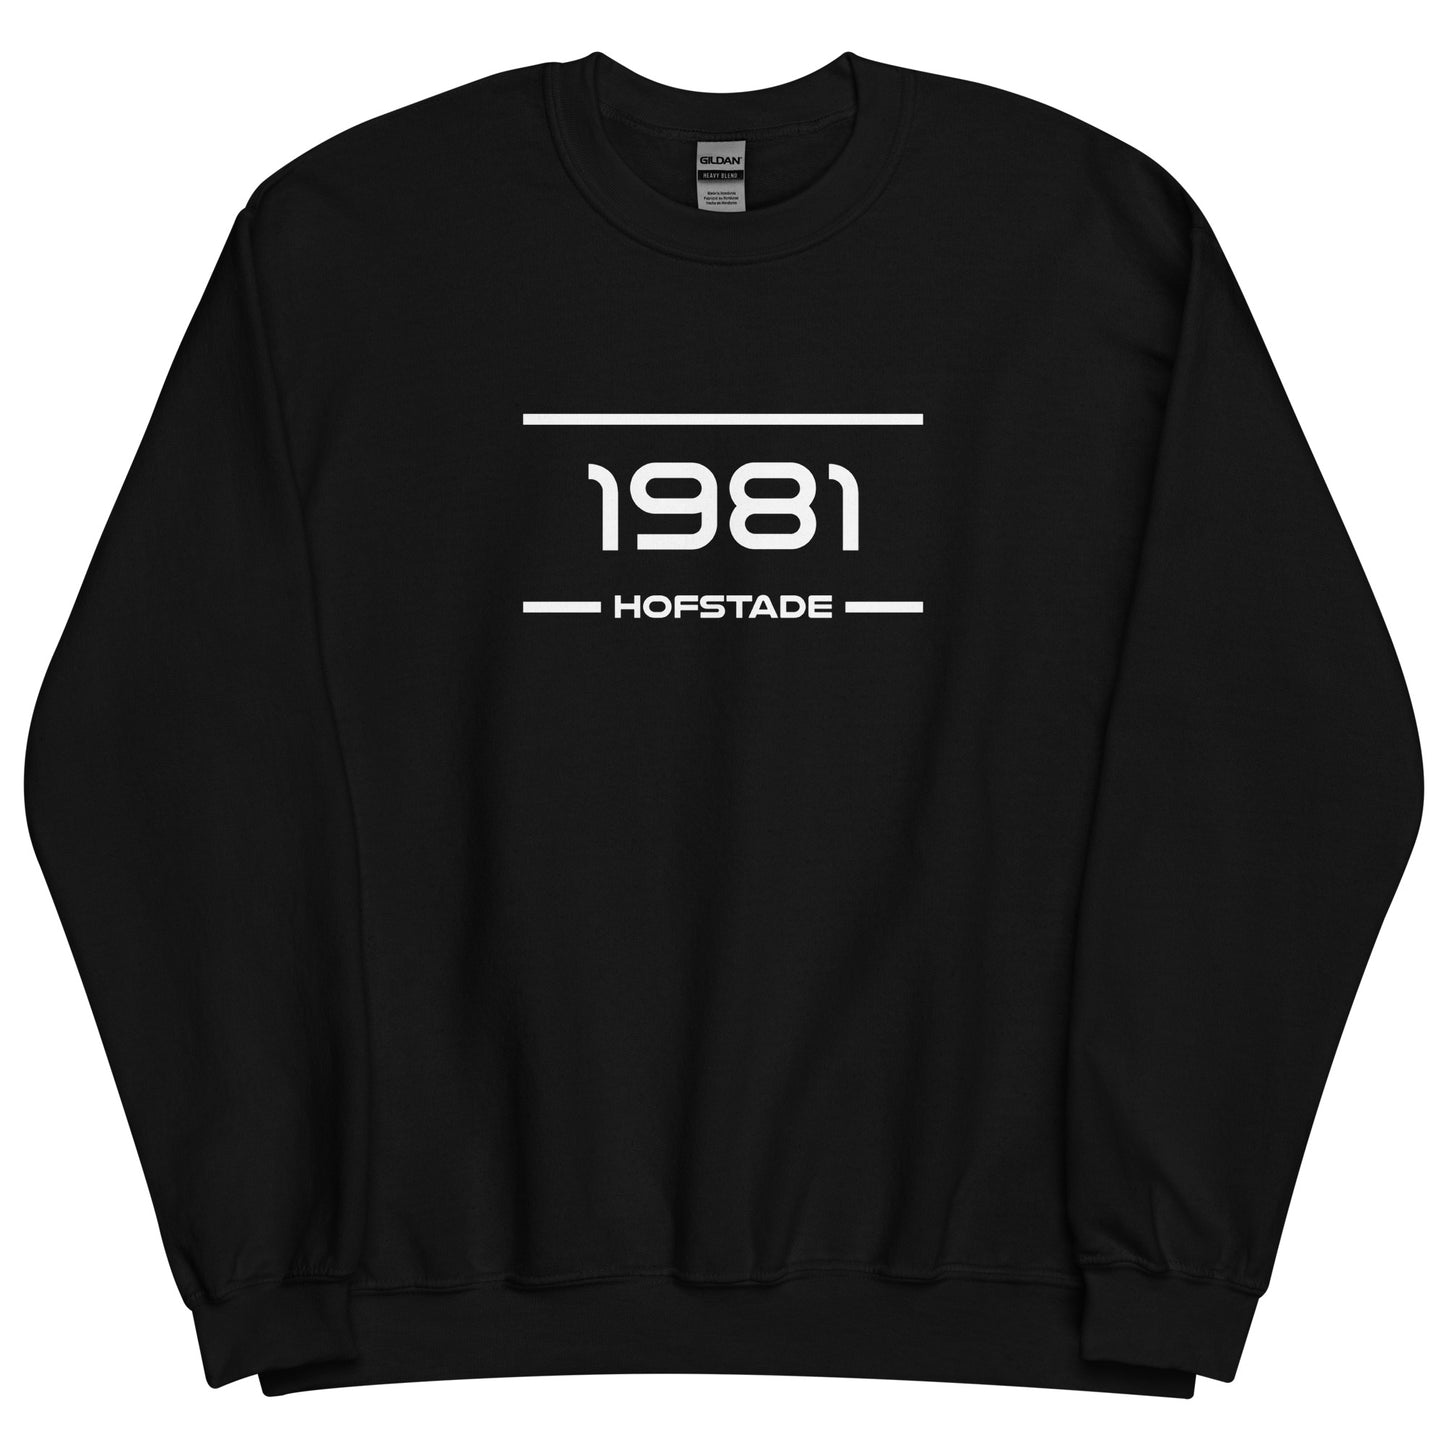 Sweater - 1981 - Hofstade (M/V)